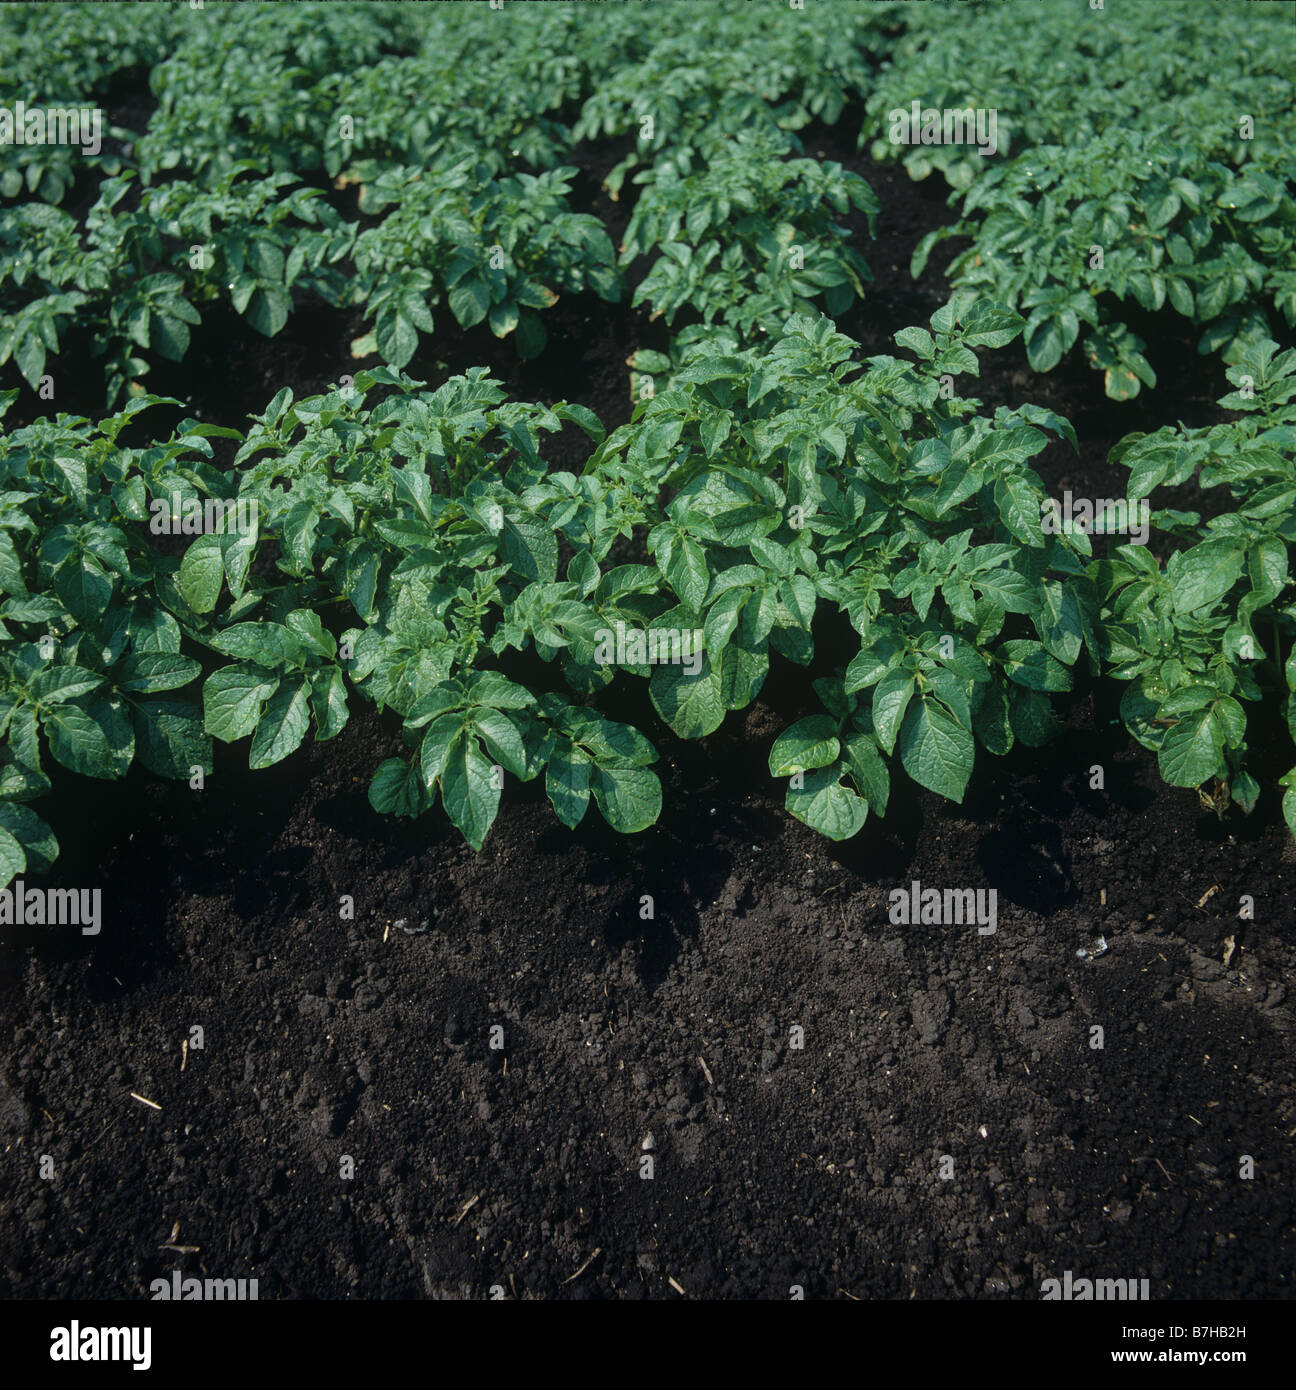 Las plantas de patata en los espinazos en oscuro suelo orgánico Fenland Foto de stock